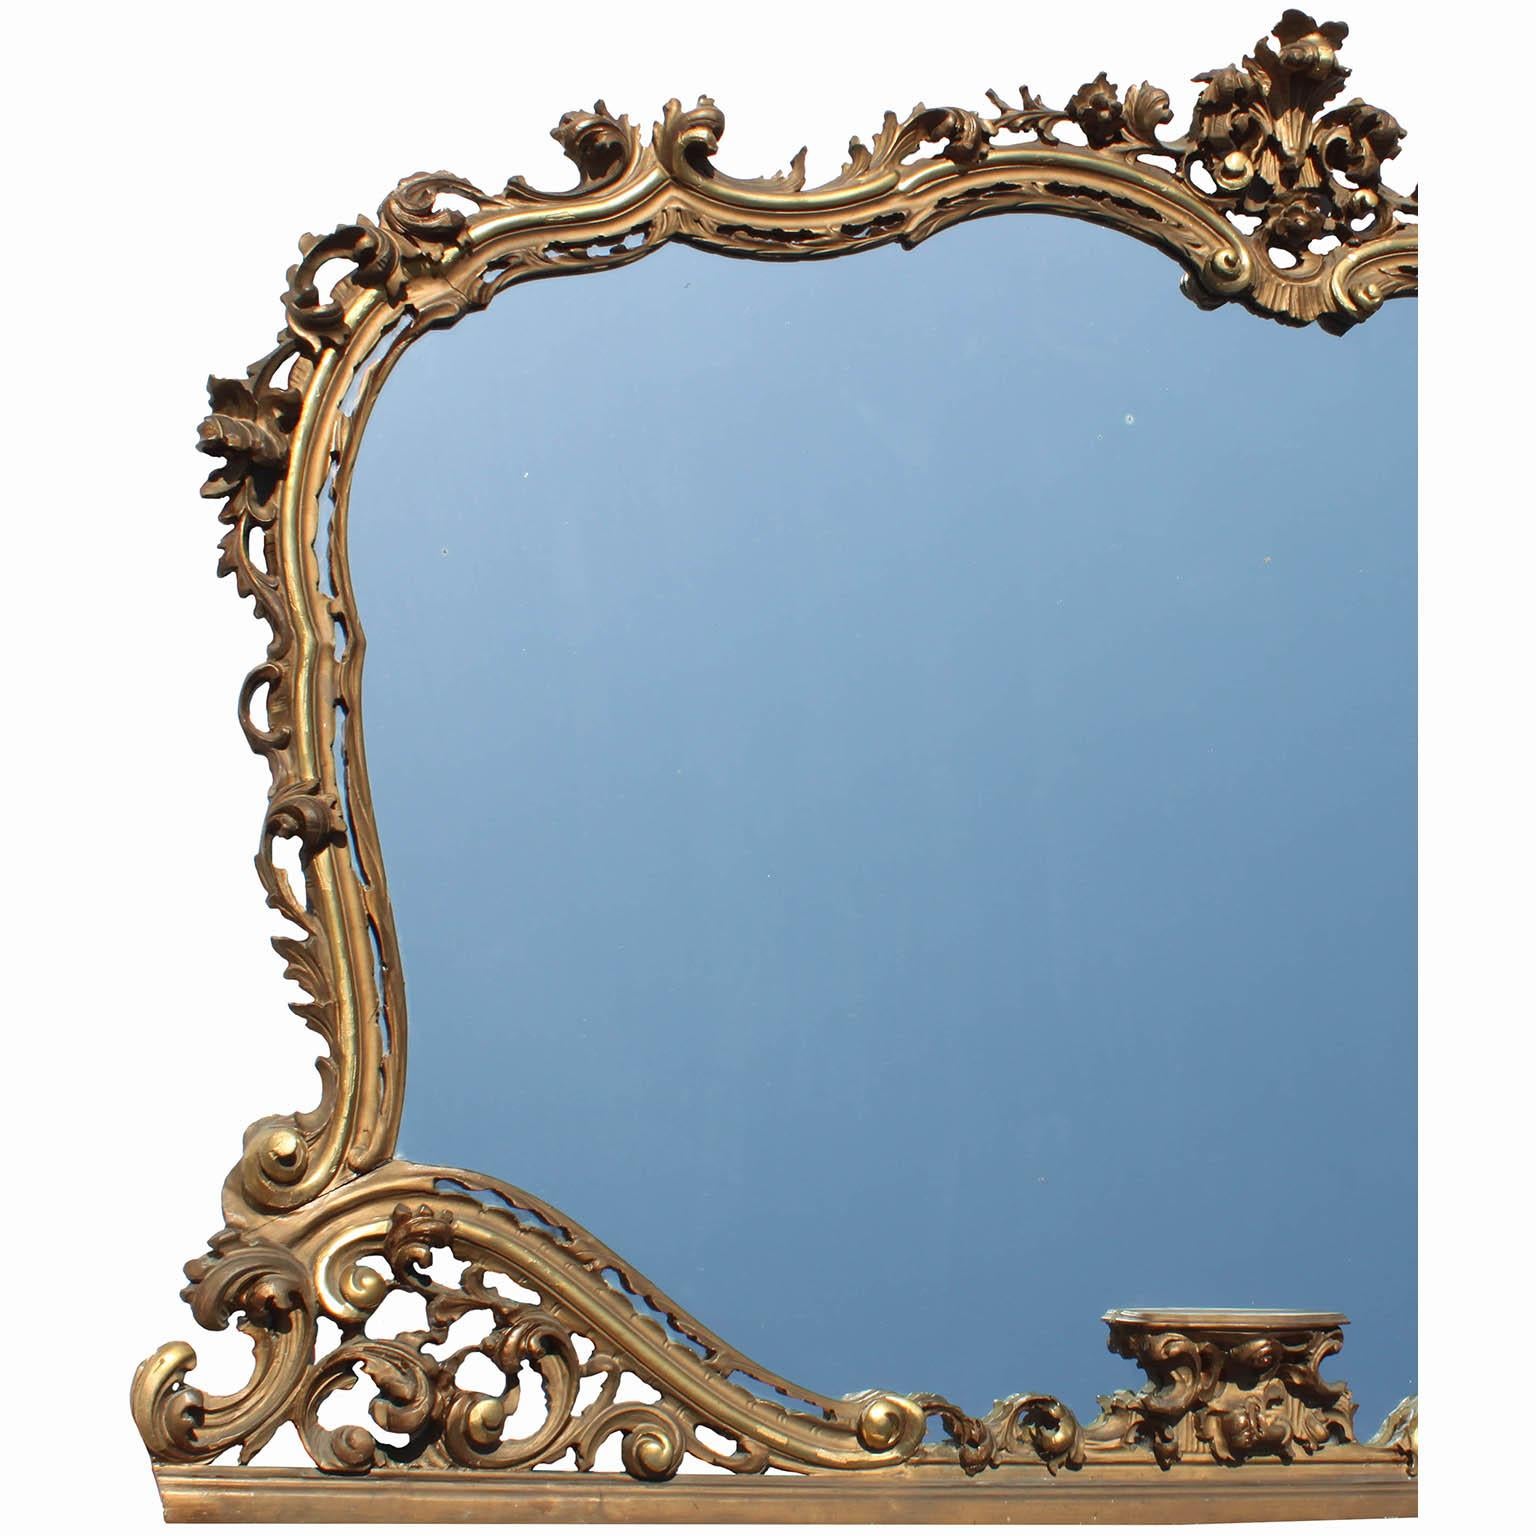 Großer französischer Spiegelrahmen im Stil der Belle Époque im Louis XV-Stil mit kunstvollen Schnitzereien aus vergoldetem Holz mit Übermantel. Der kunstvoll geschnitzte Rahmen ist mit einem Blumen-Blatt-Arrangement gekrönt, das durchbrochene